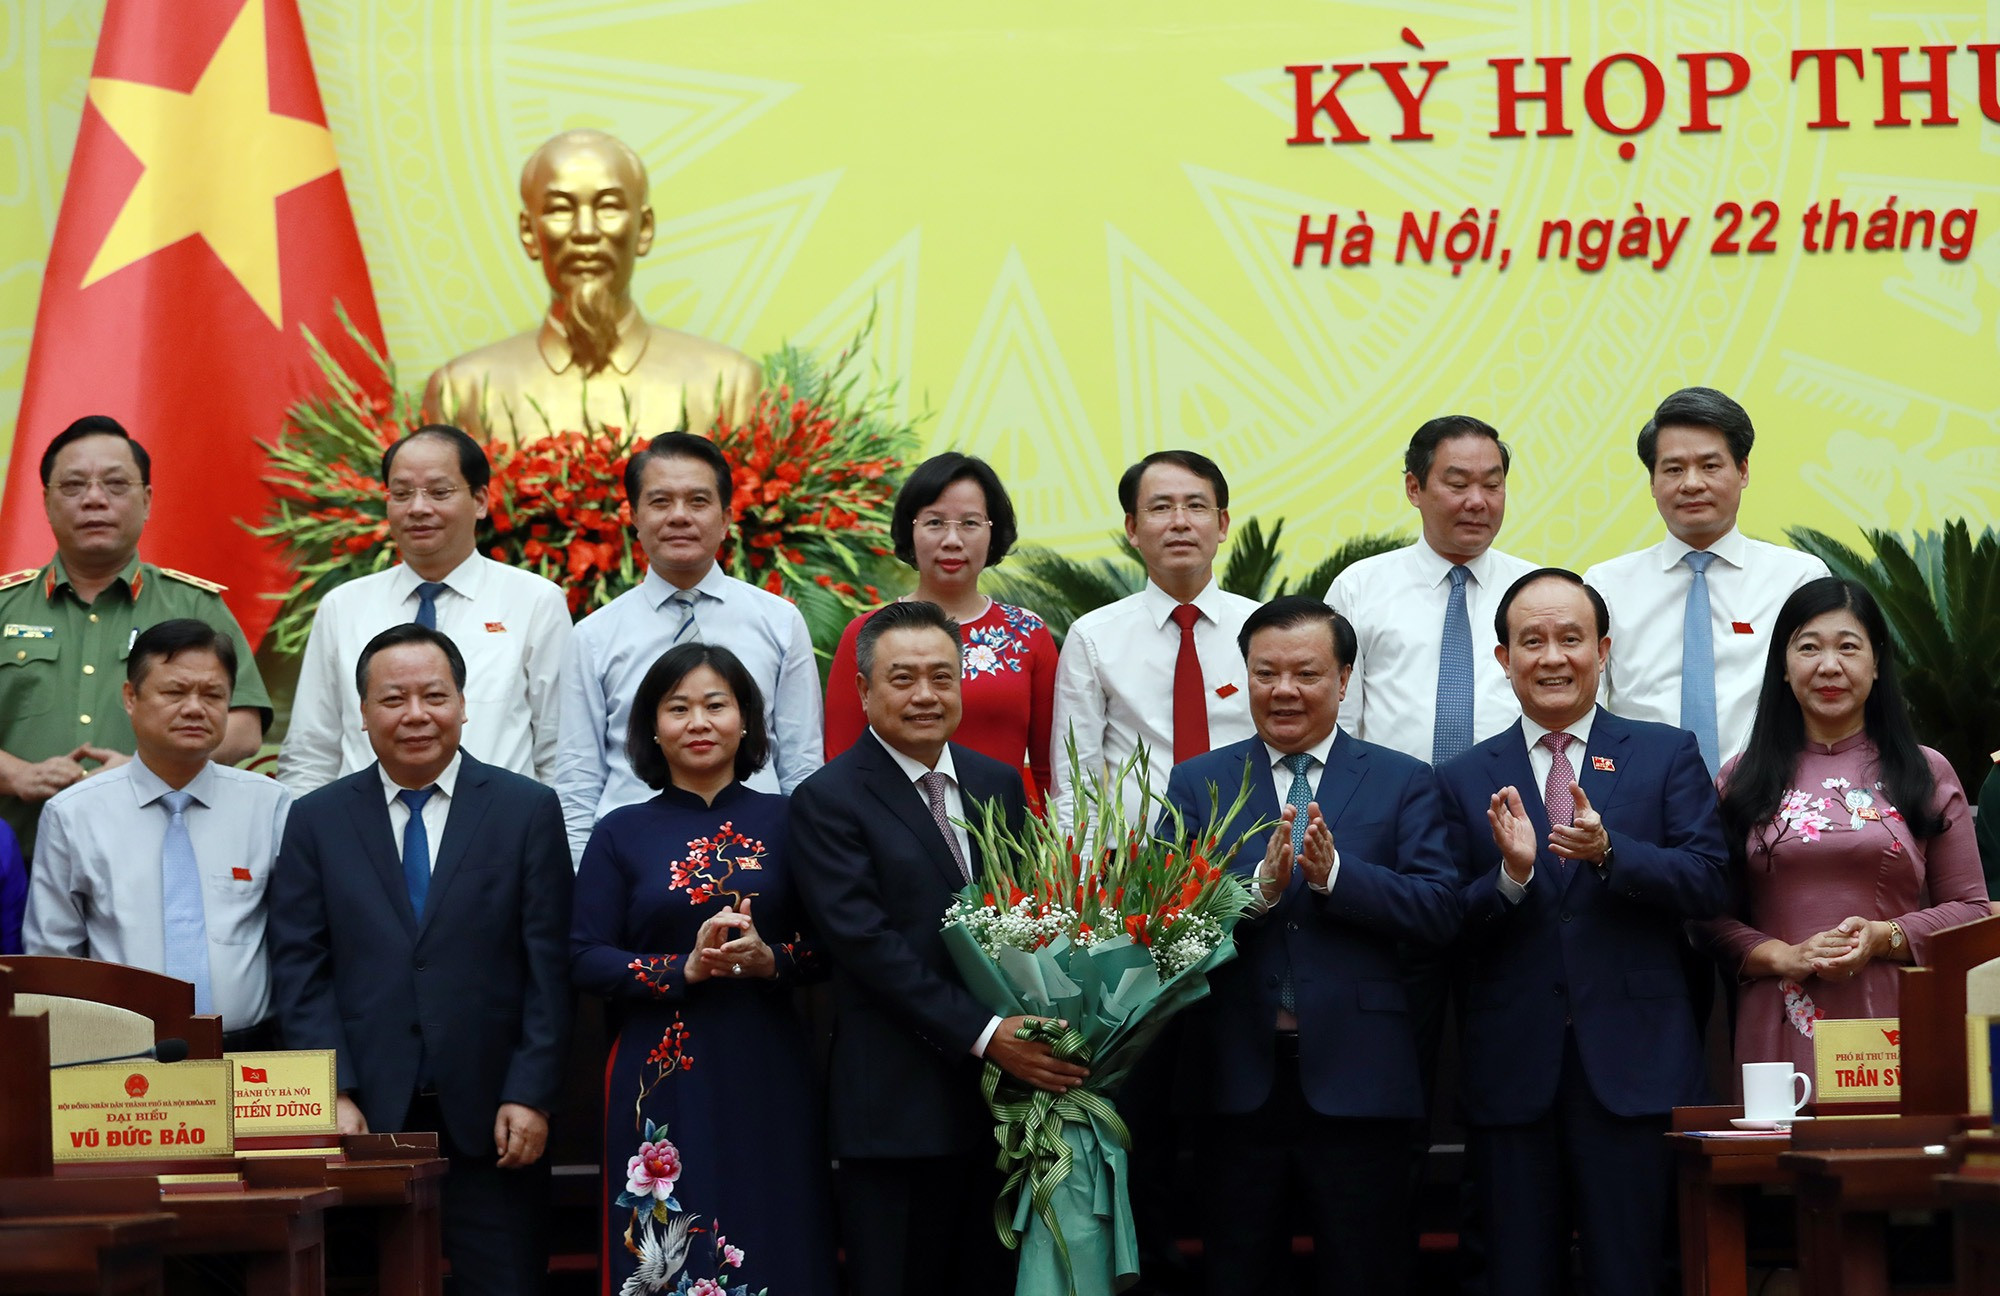 Ông Trần Sỹ Thanh làm Chủ tịch thành phố Hà Nội